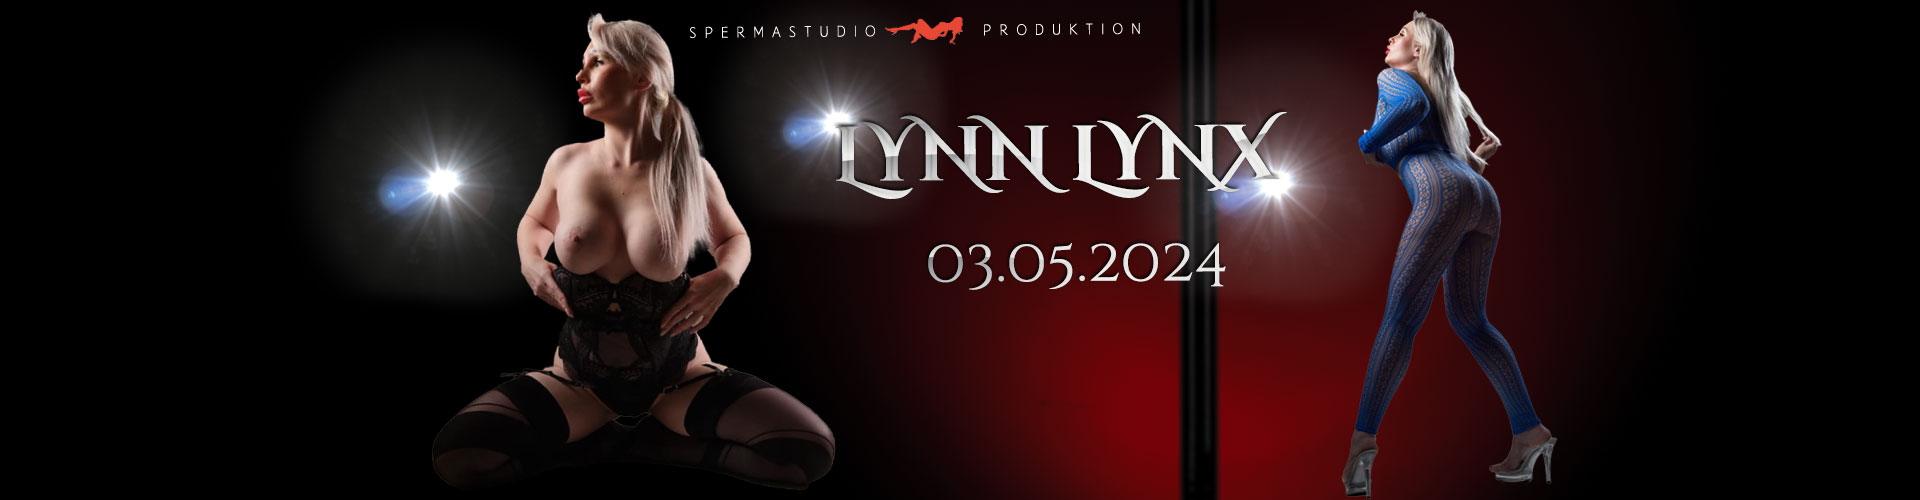 Produktion mit Lynn Lynx am 03.05.2024